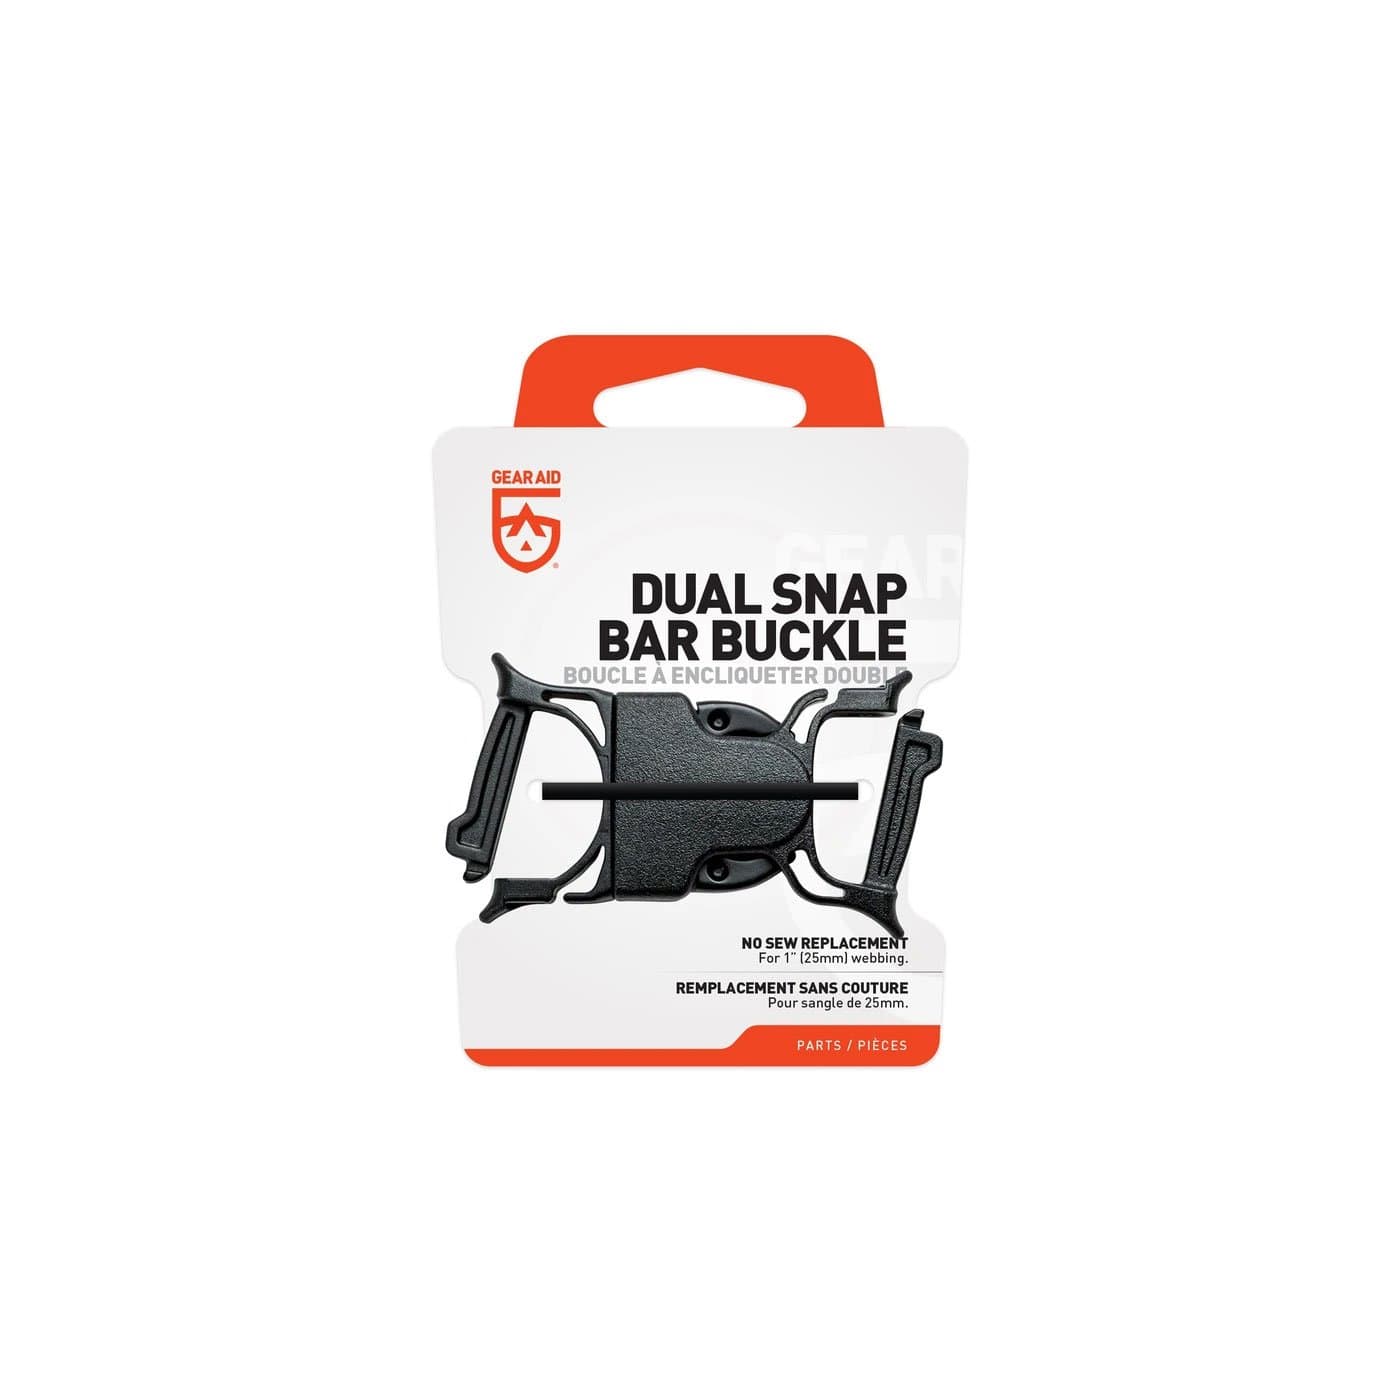 Gear Aid Dual Snap Bar Buckle 1